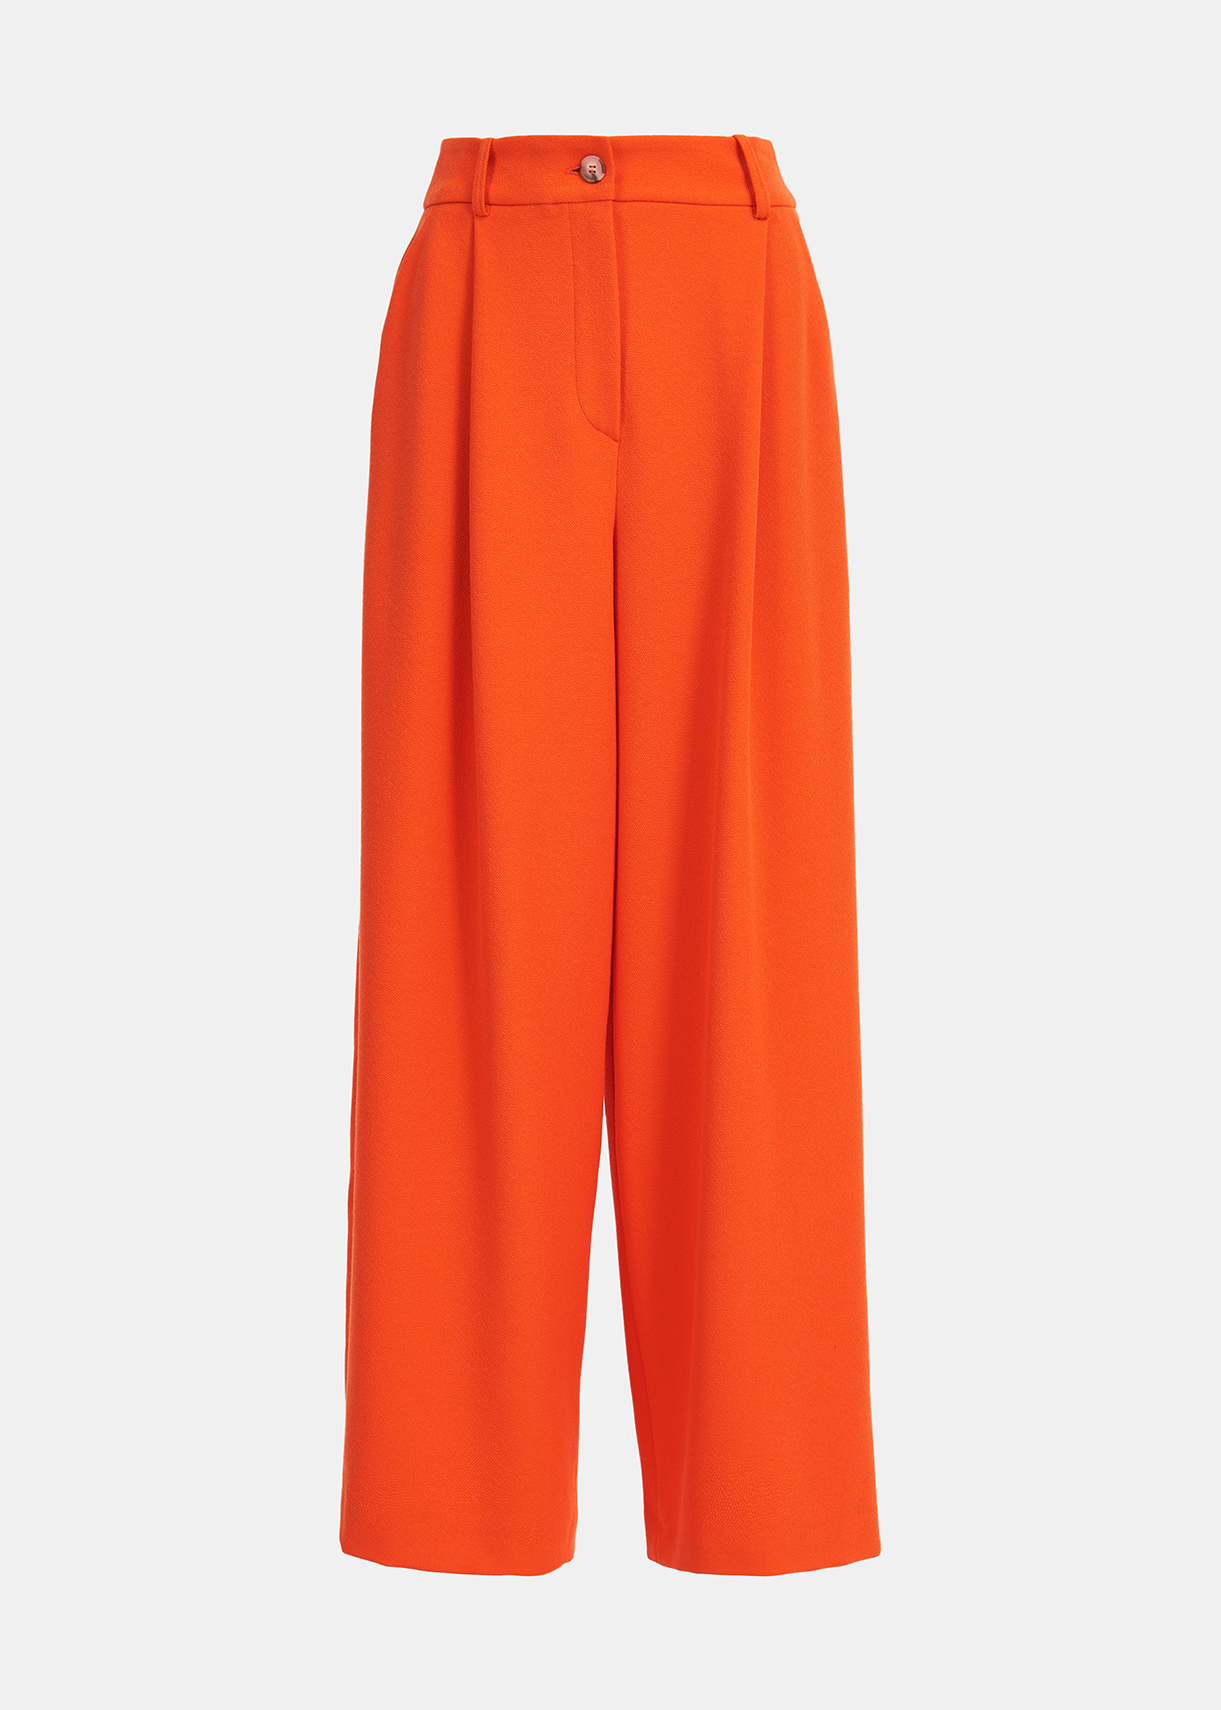 Essentiel Antwerp Employee Orange Trousers